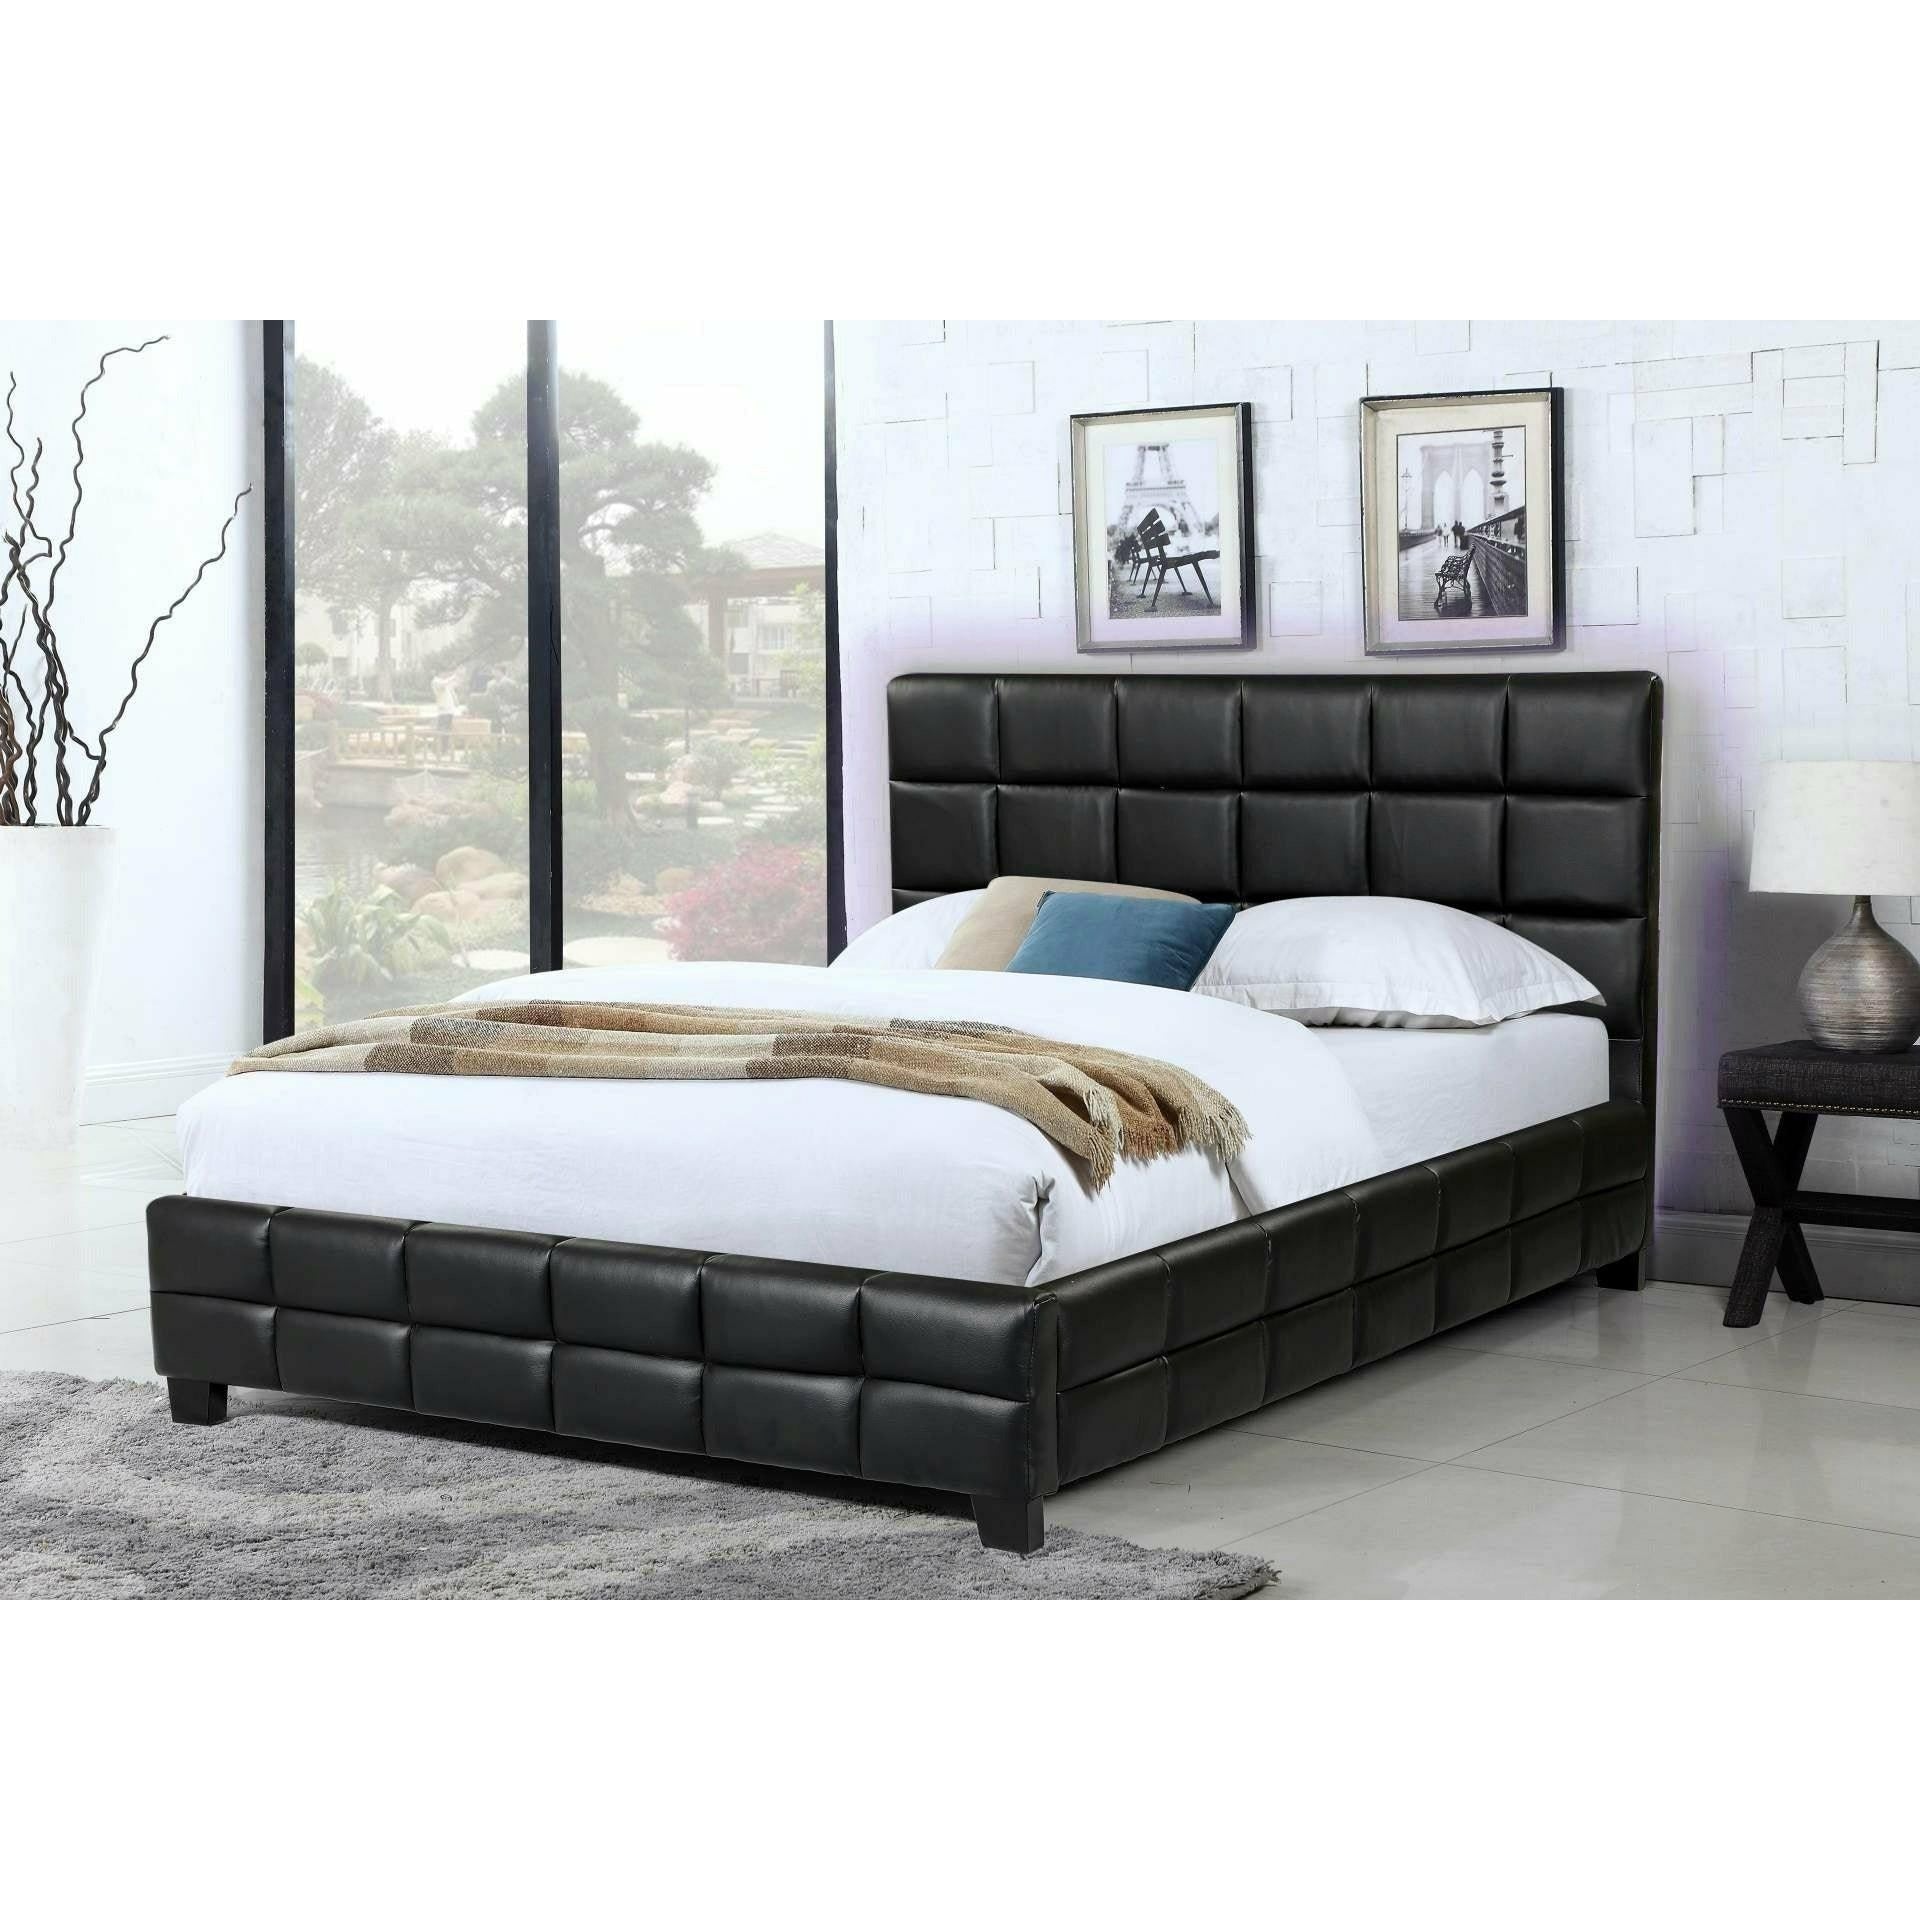 AMELIA UPHOLSTERED BED - BLACK - Fraser Furniture Abbotsford